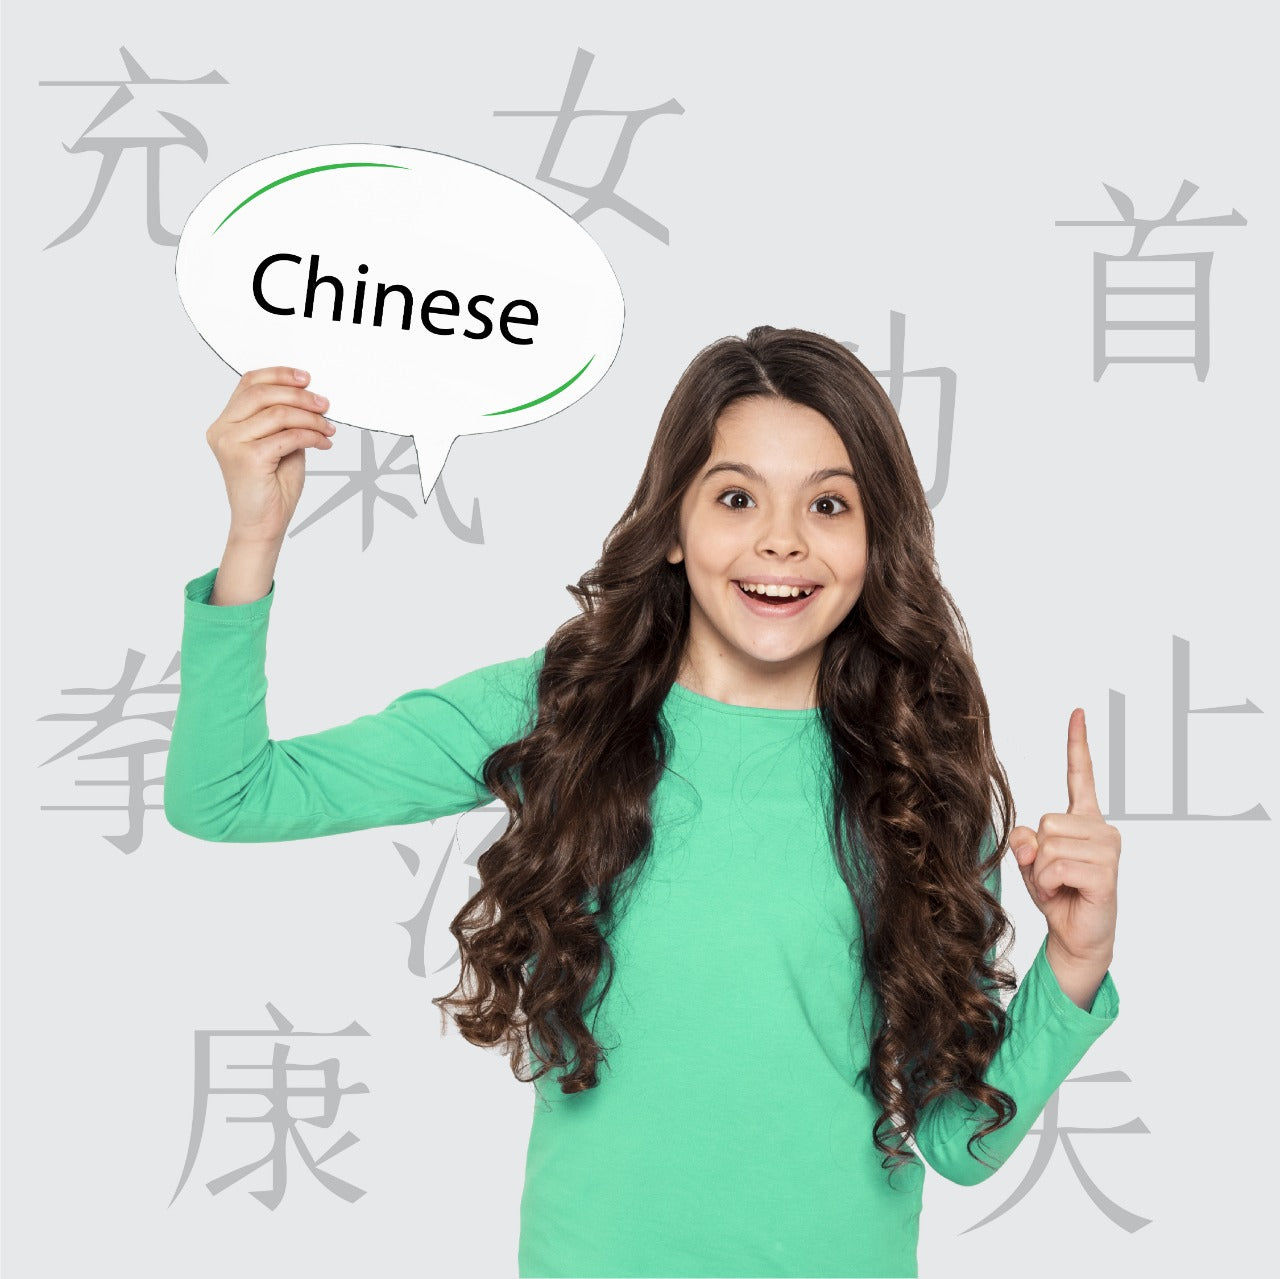 دورة رياض الأطفال في اللغة الصينية أون لاين - elmadrasah.com